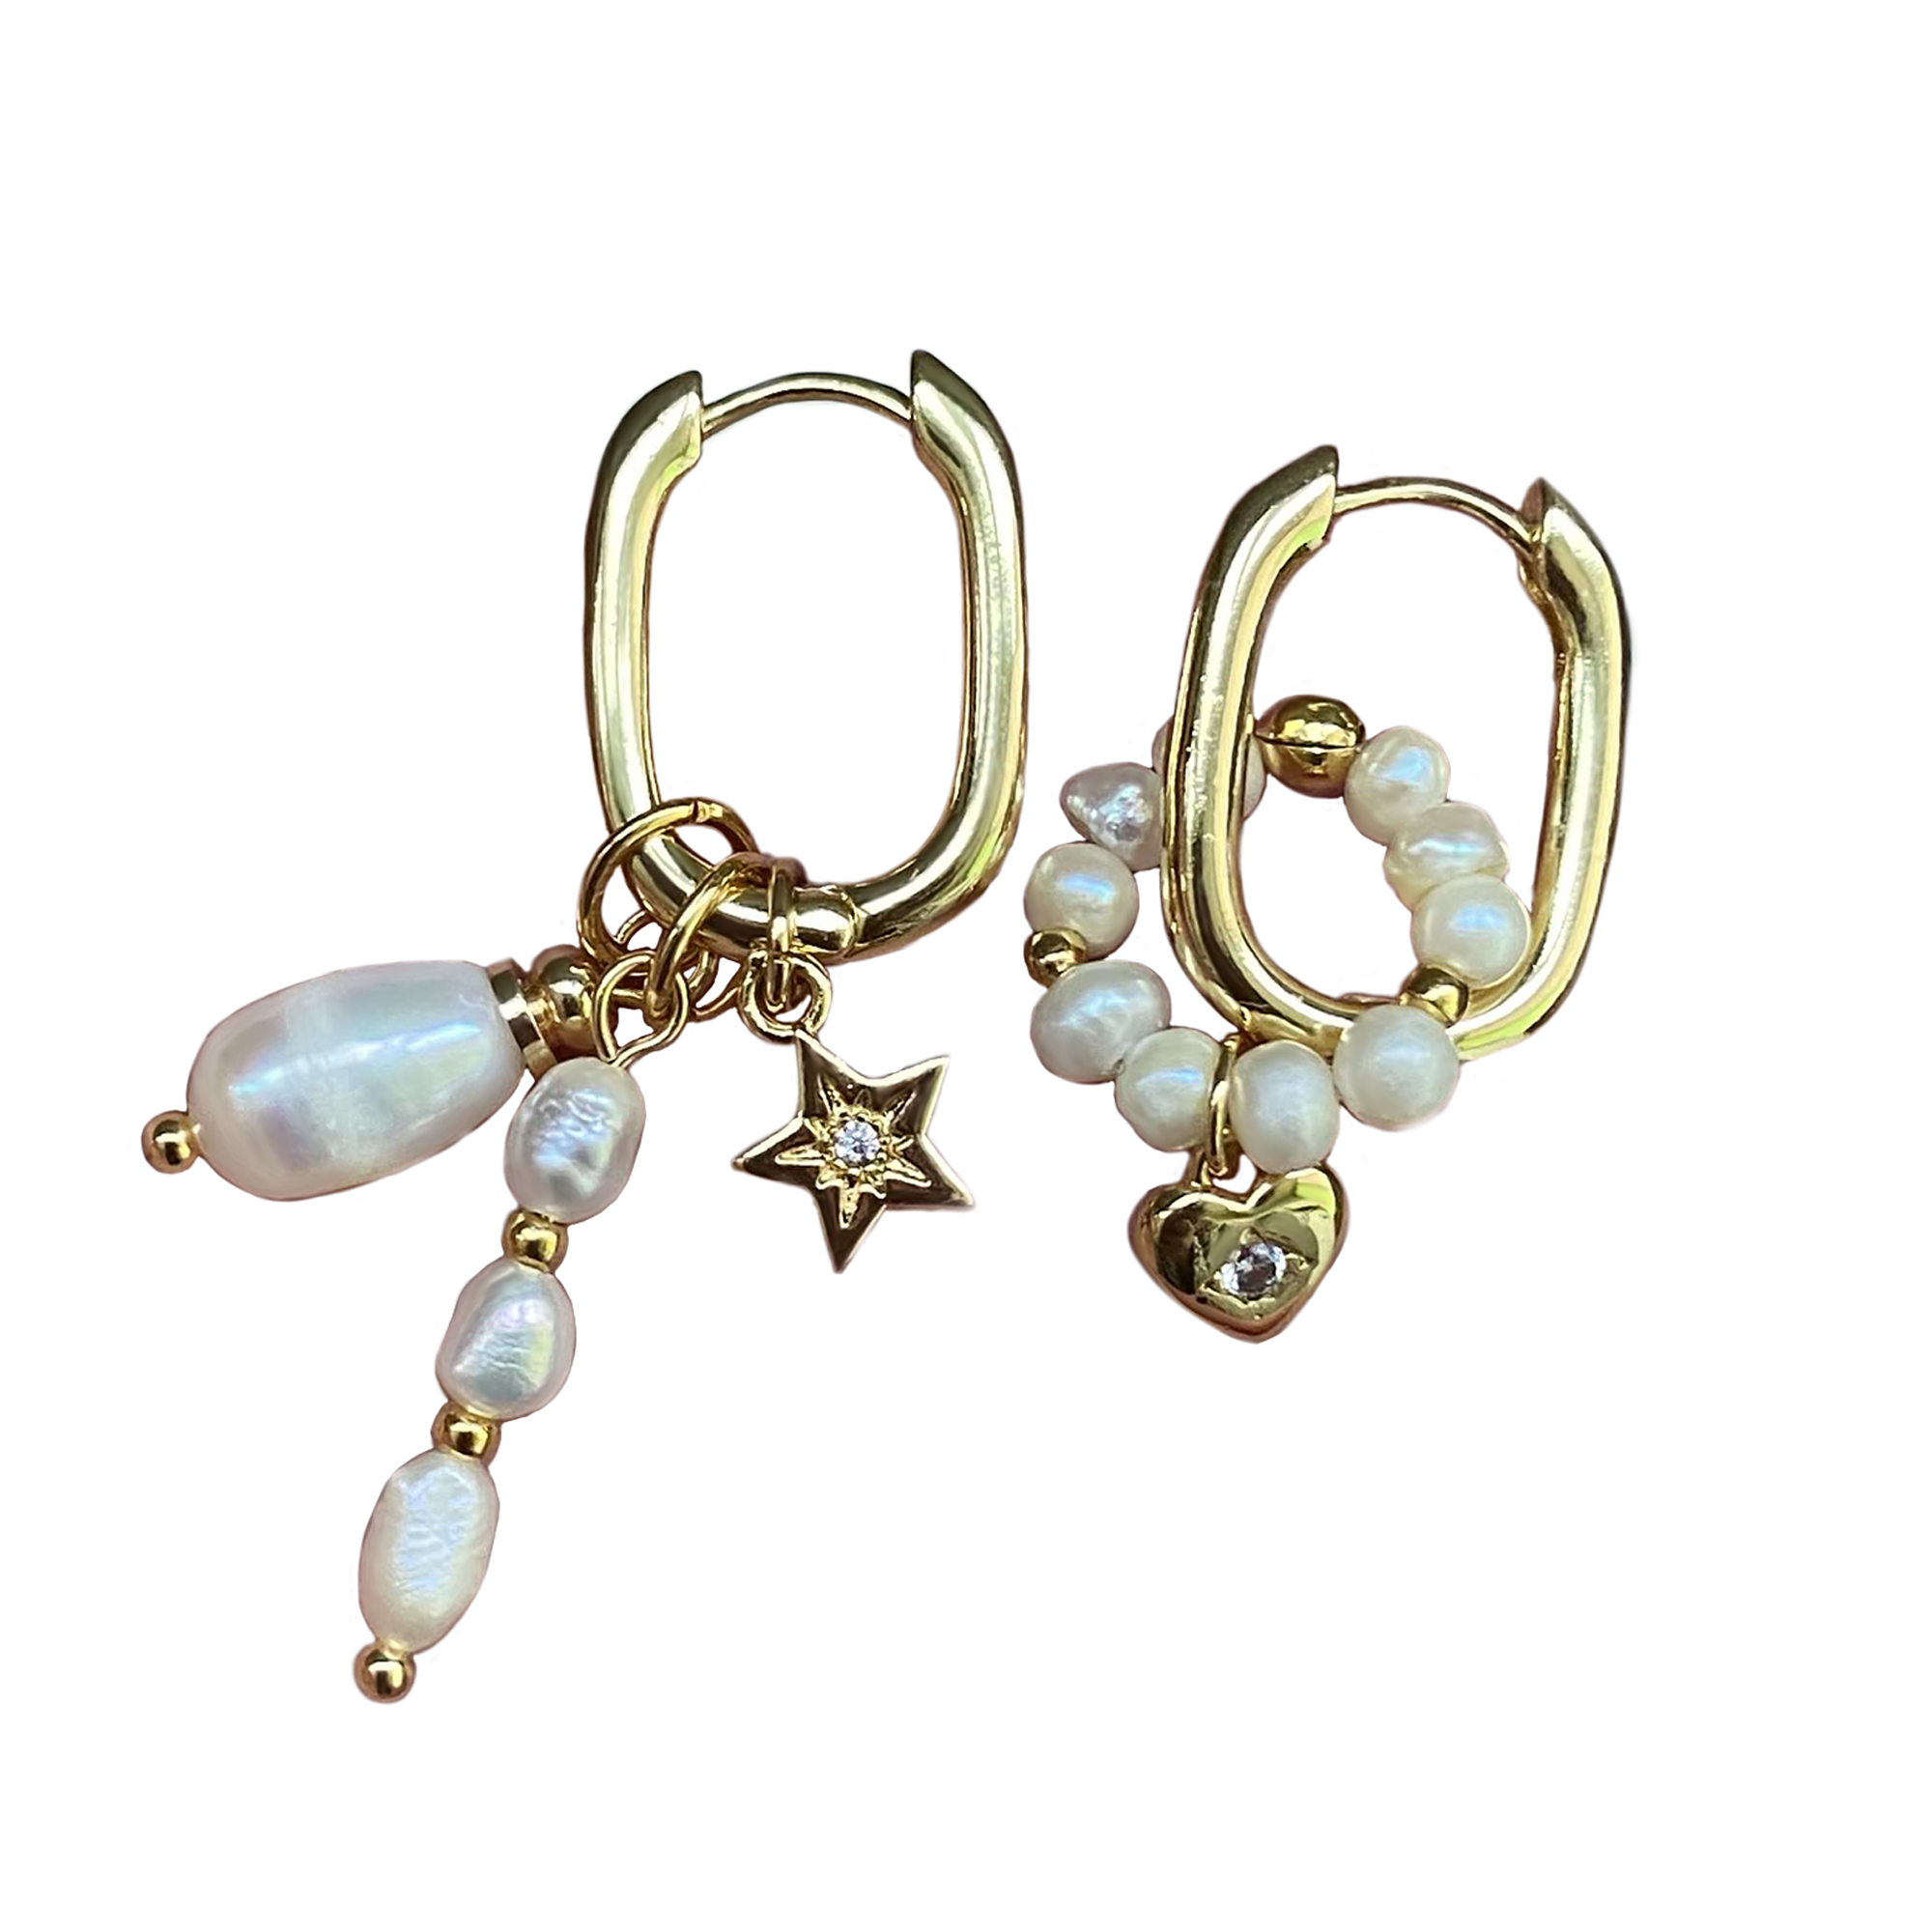 Gold Plated Kongo Earrings with pendants